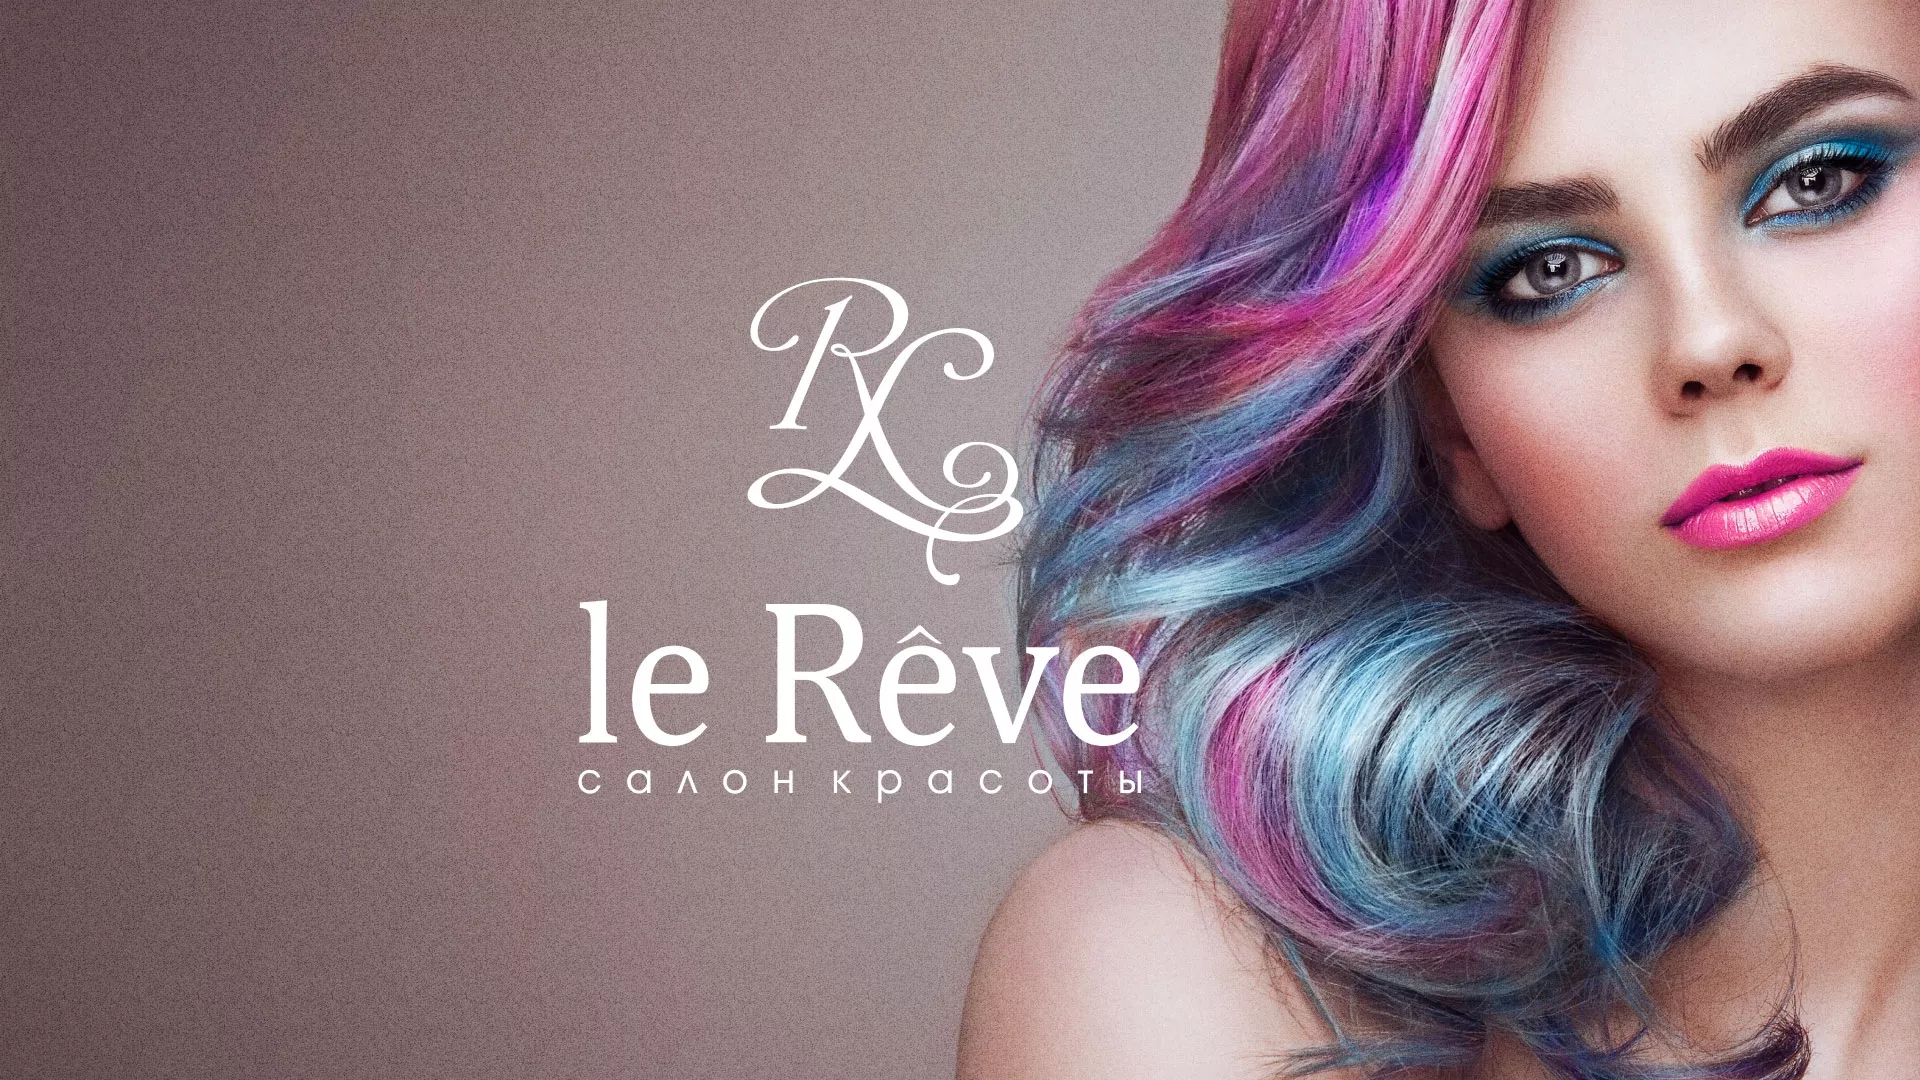 Создание сайта для салона красоты «Le Reve» в Железноводске